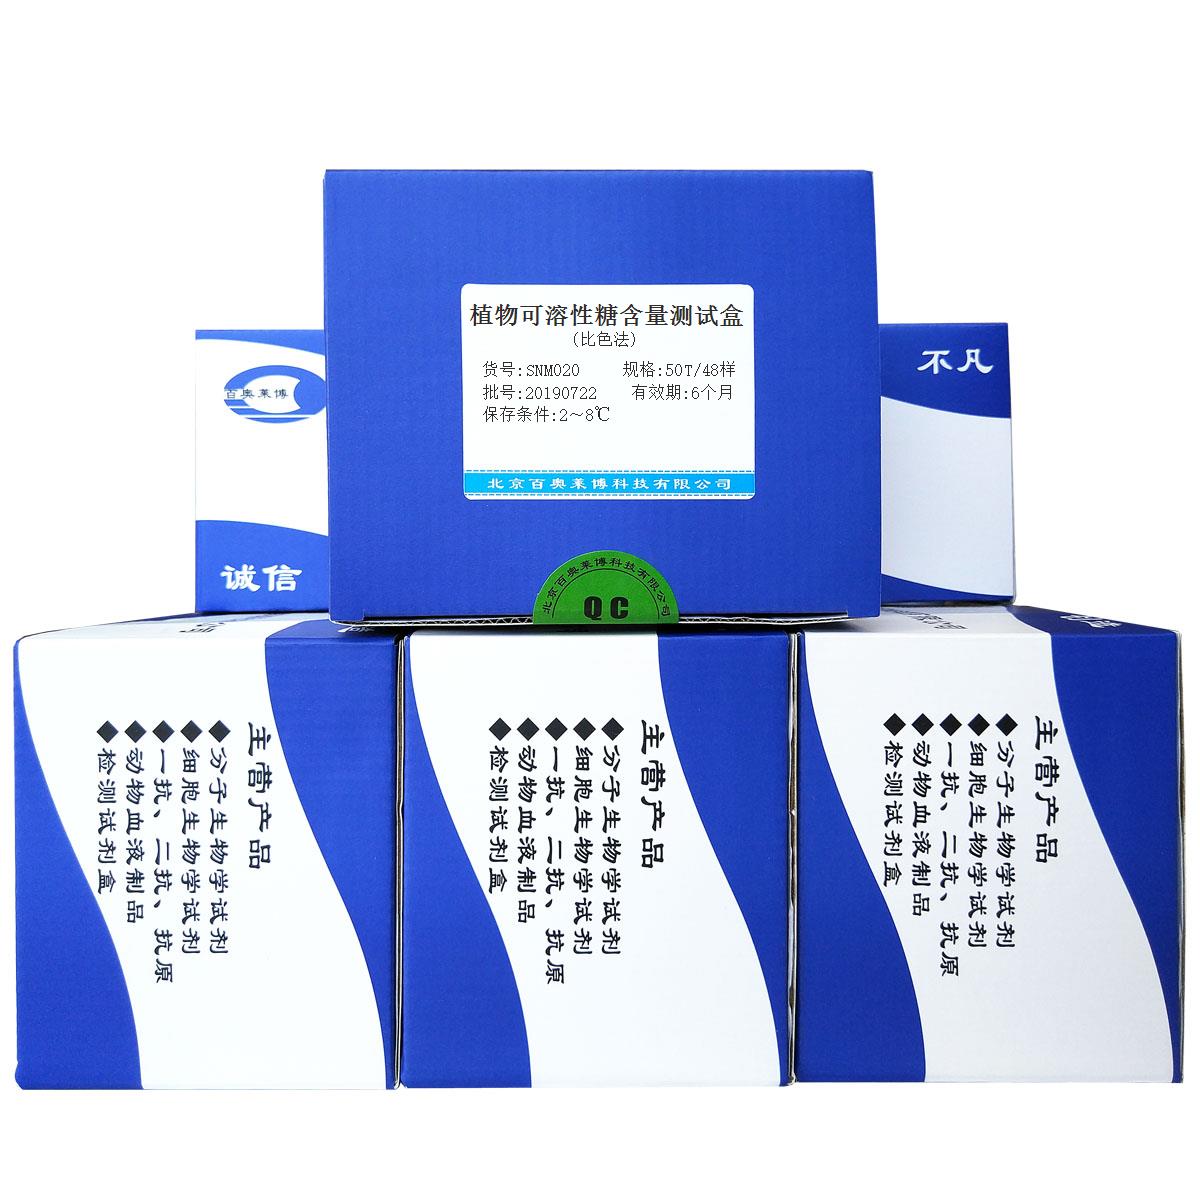 植物可溶性糖含量测试盒(比色法)北京品牌